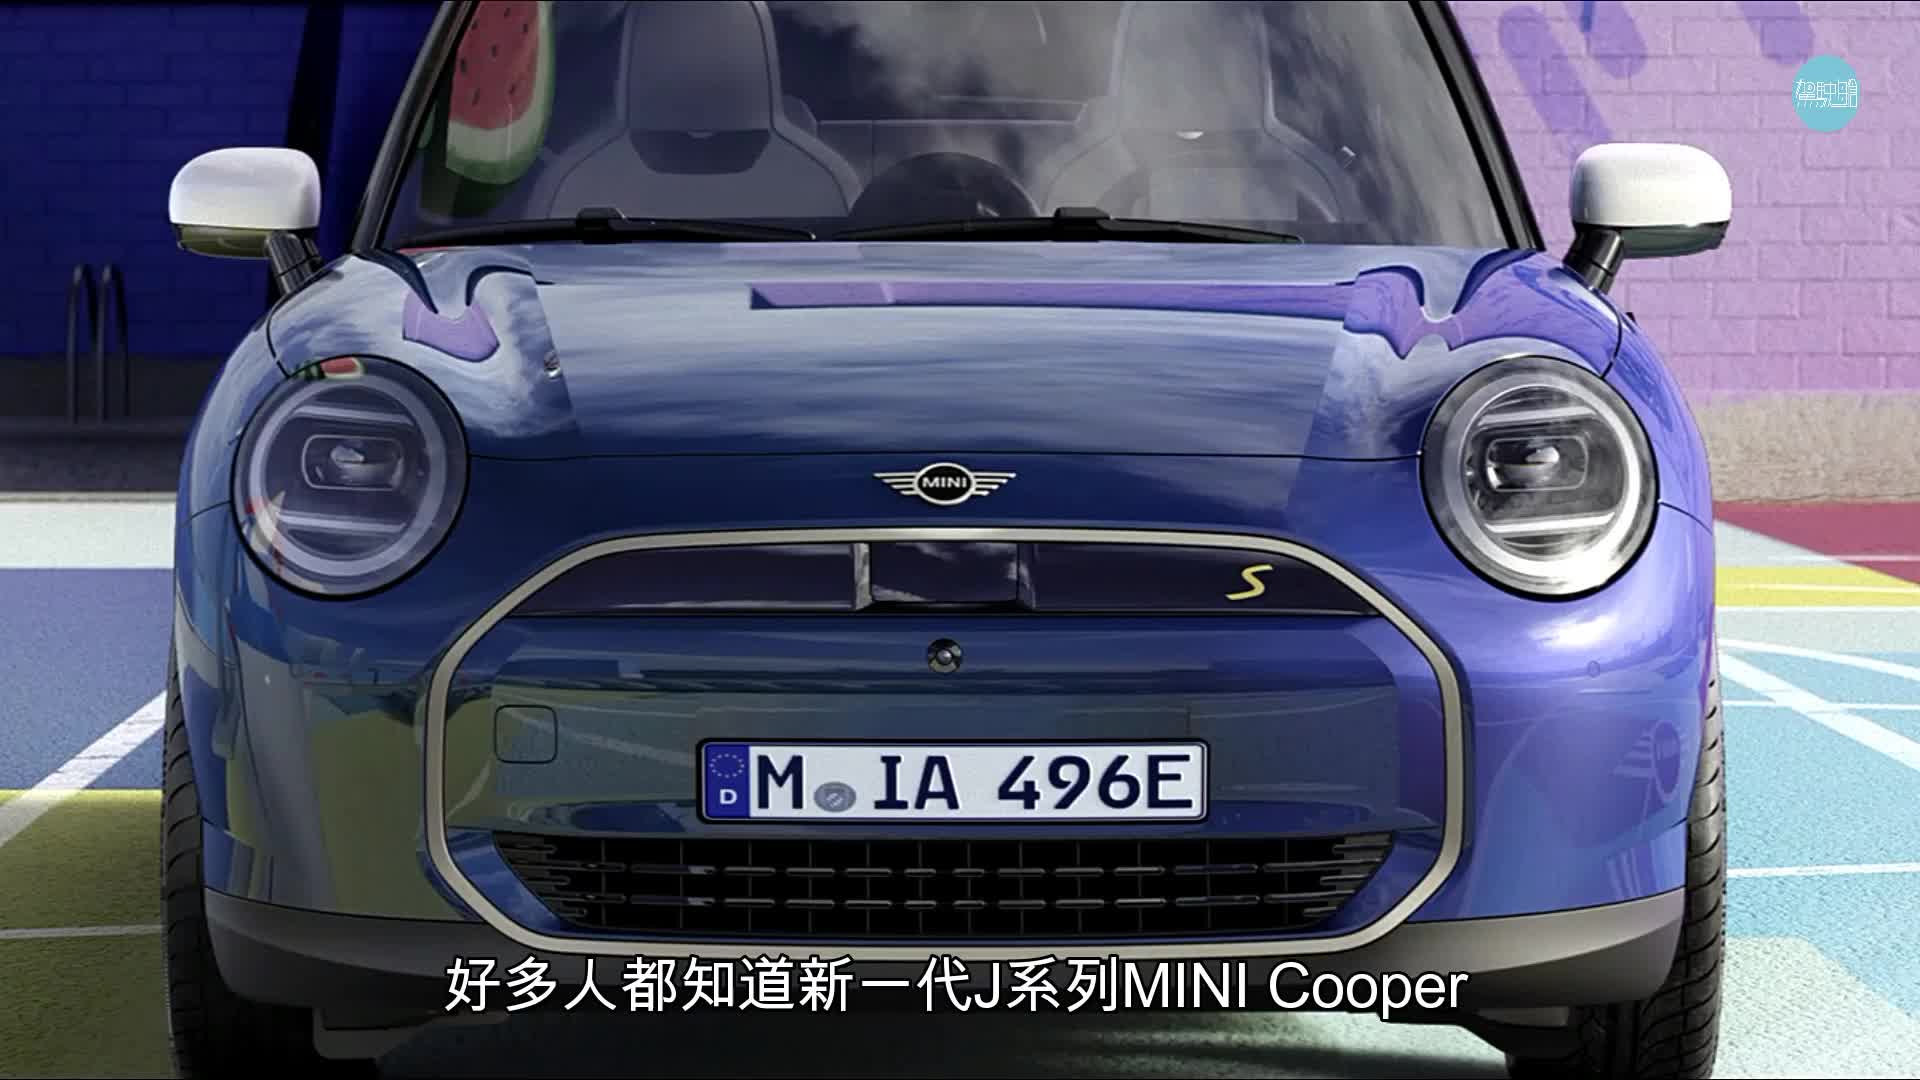 新一代MINI Cooper SE電動車今天(2月1日)在香港發表，《駕駛艙》主編Daniel第一時間到專店預覽新車。